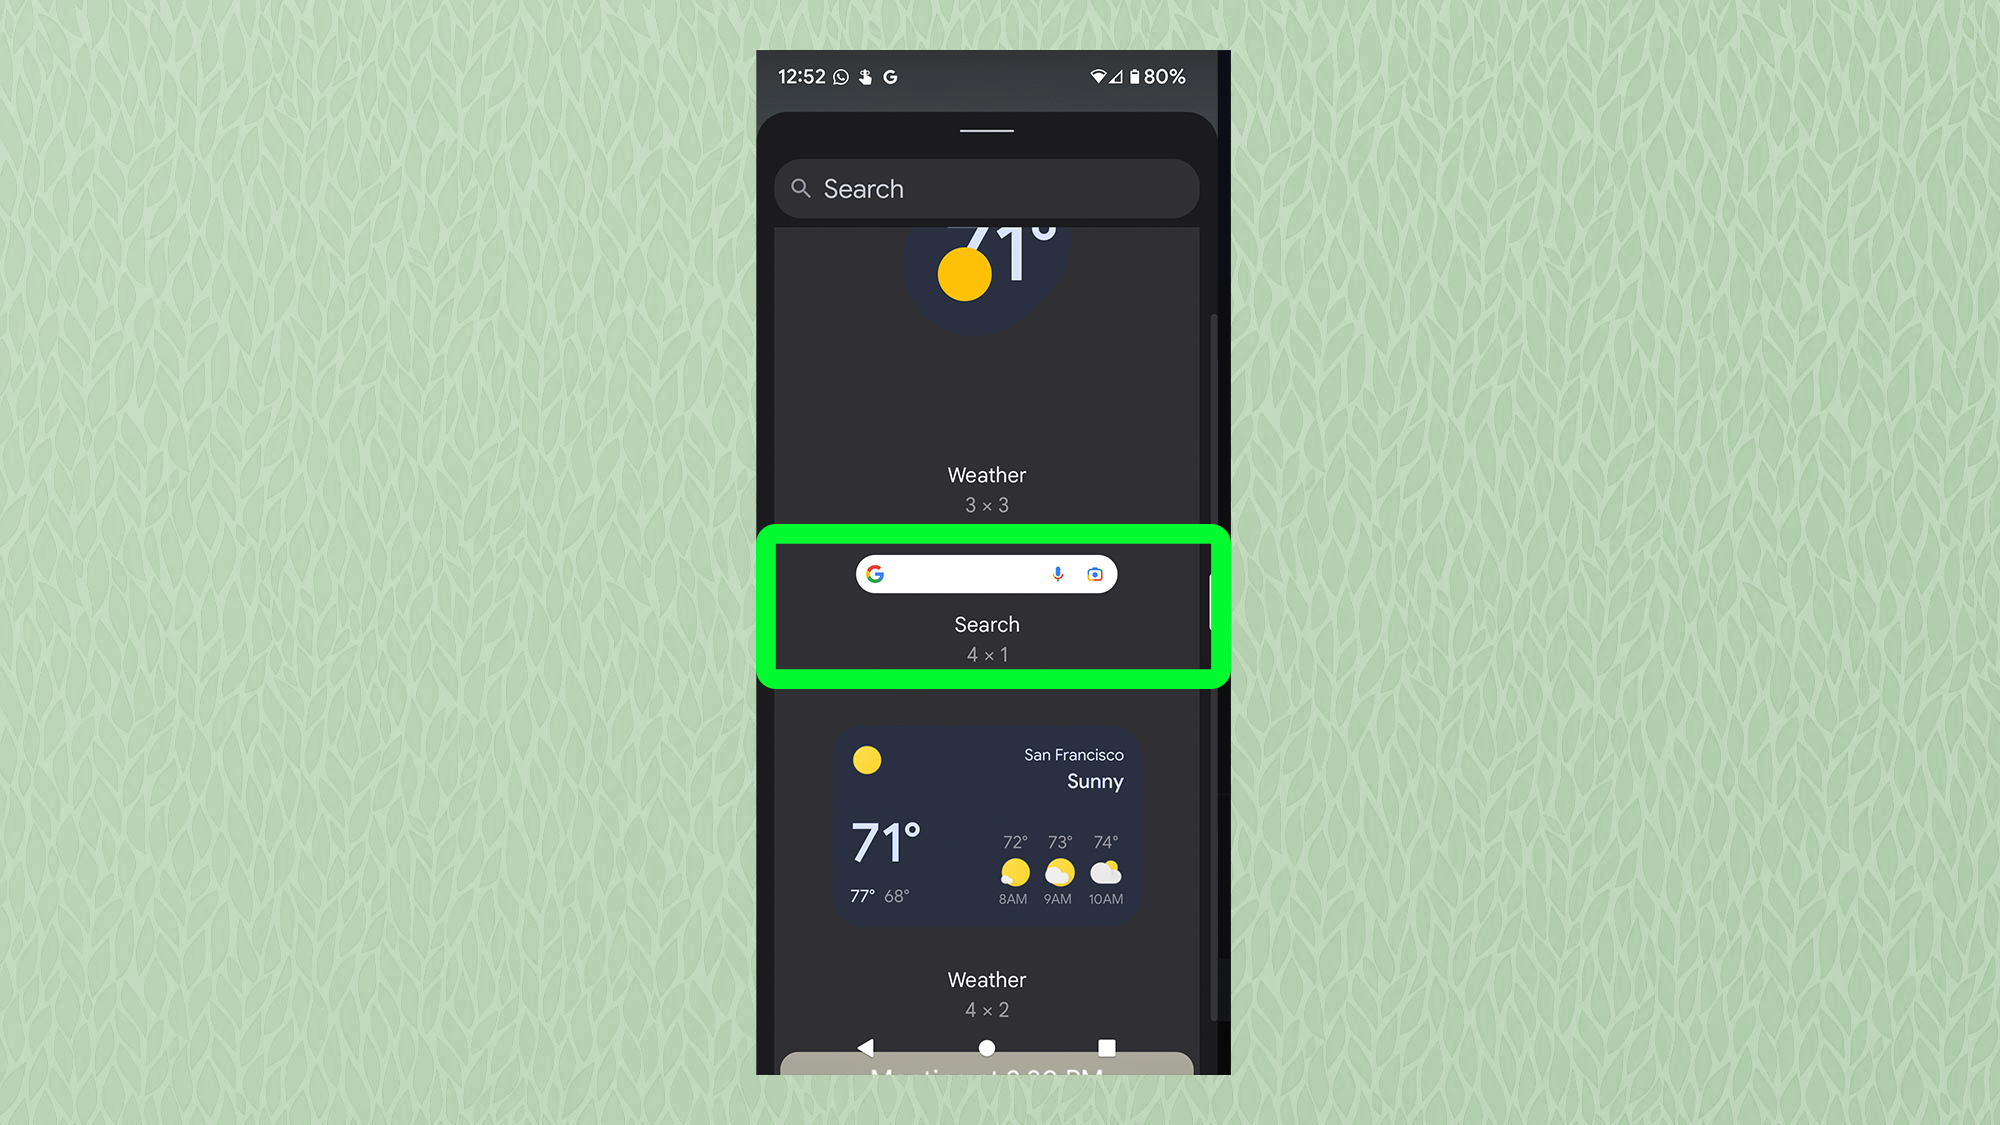 Снимок экрана с Android, показывающий меню виджетов Google с выделенной панелью поиска